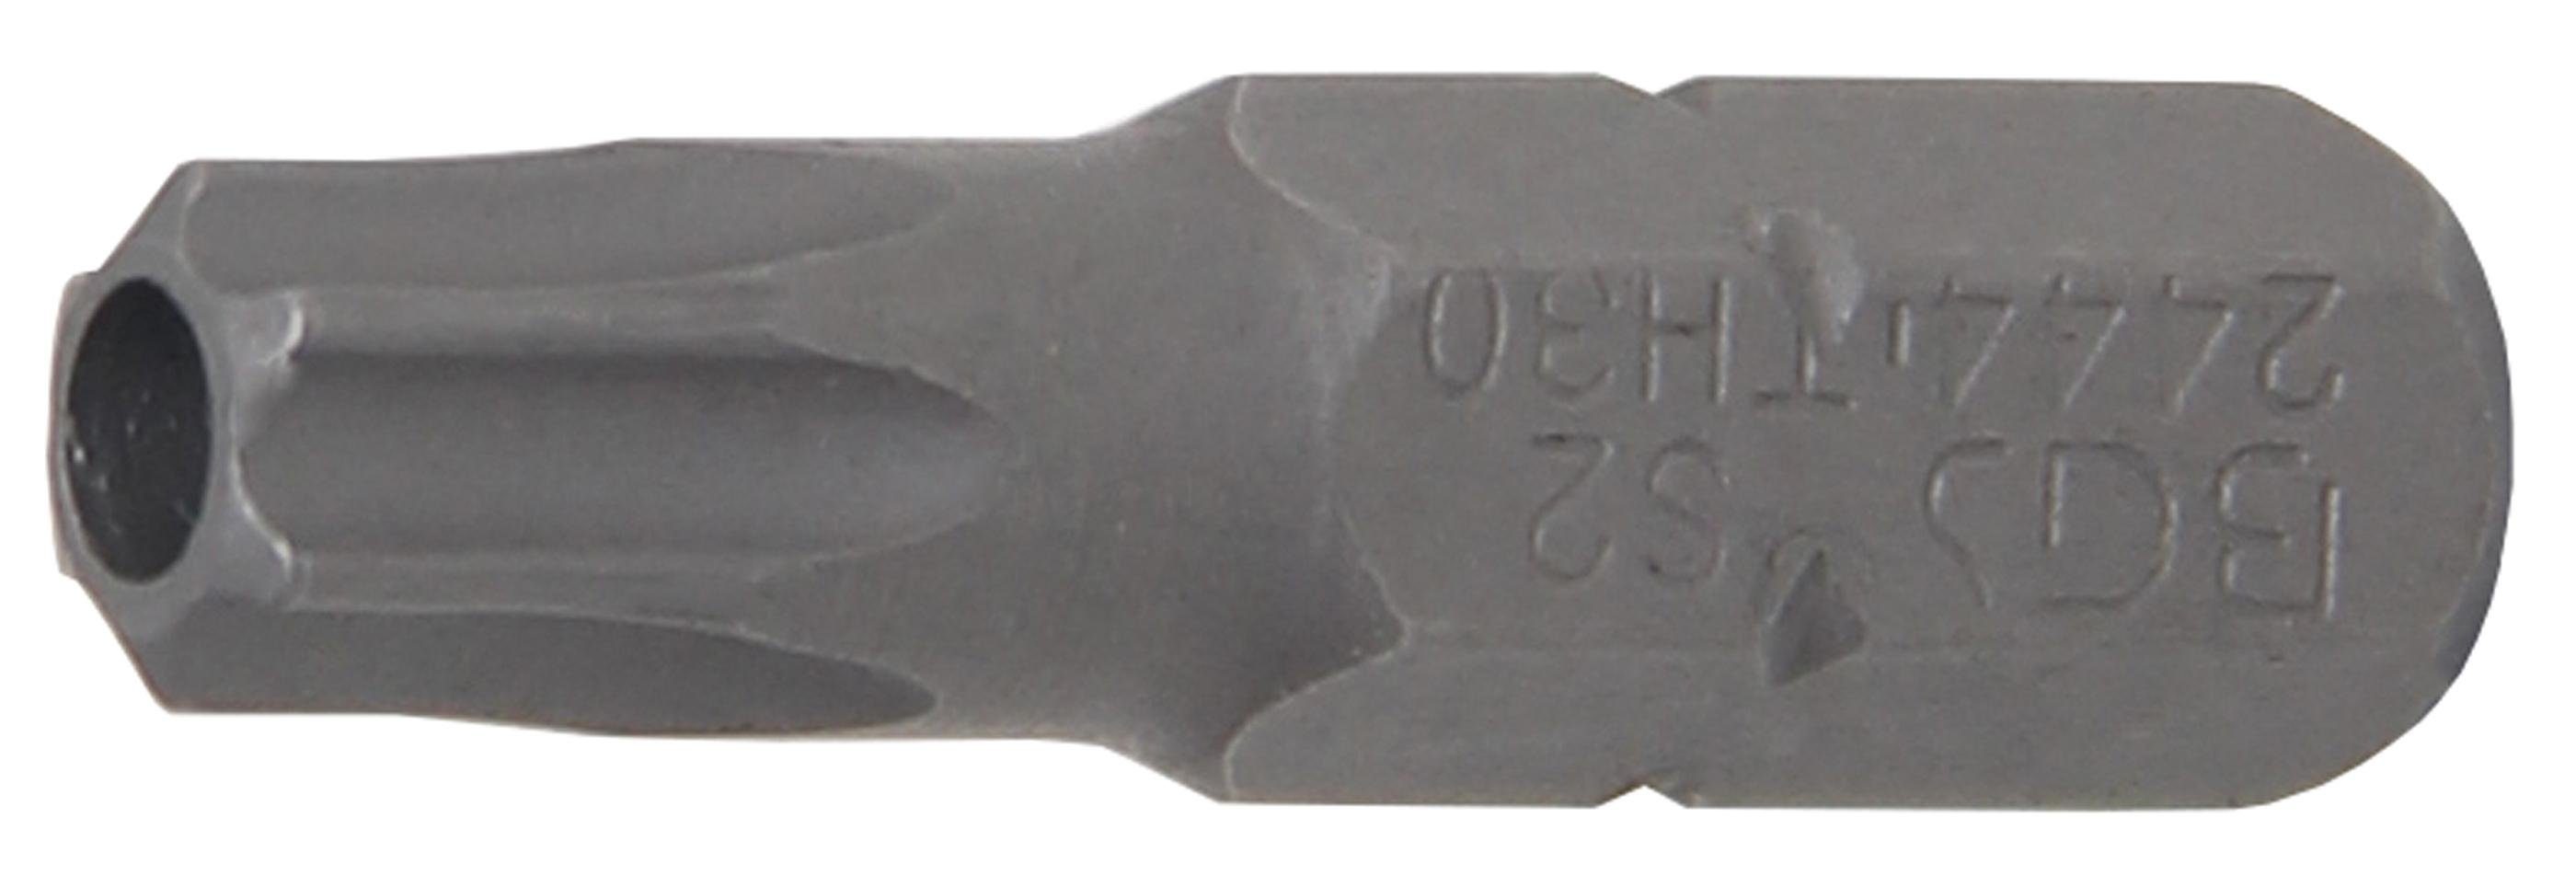 BGS technic Bit-Schraubendreher Bit, Antrieb Außensechskant 6,3 mm (1/4), T-Profil (für Torx) mit Bohrung T30